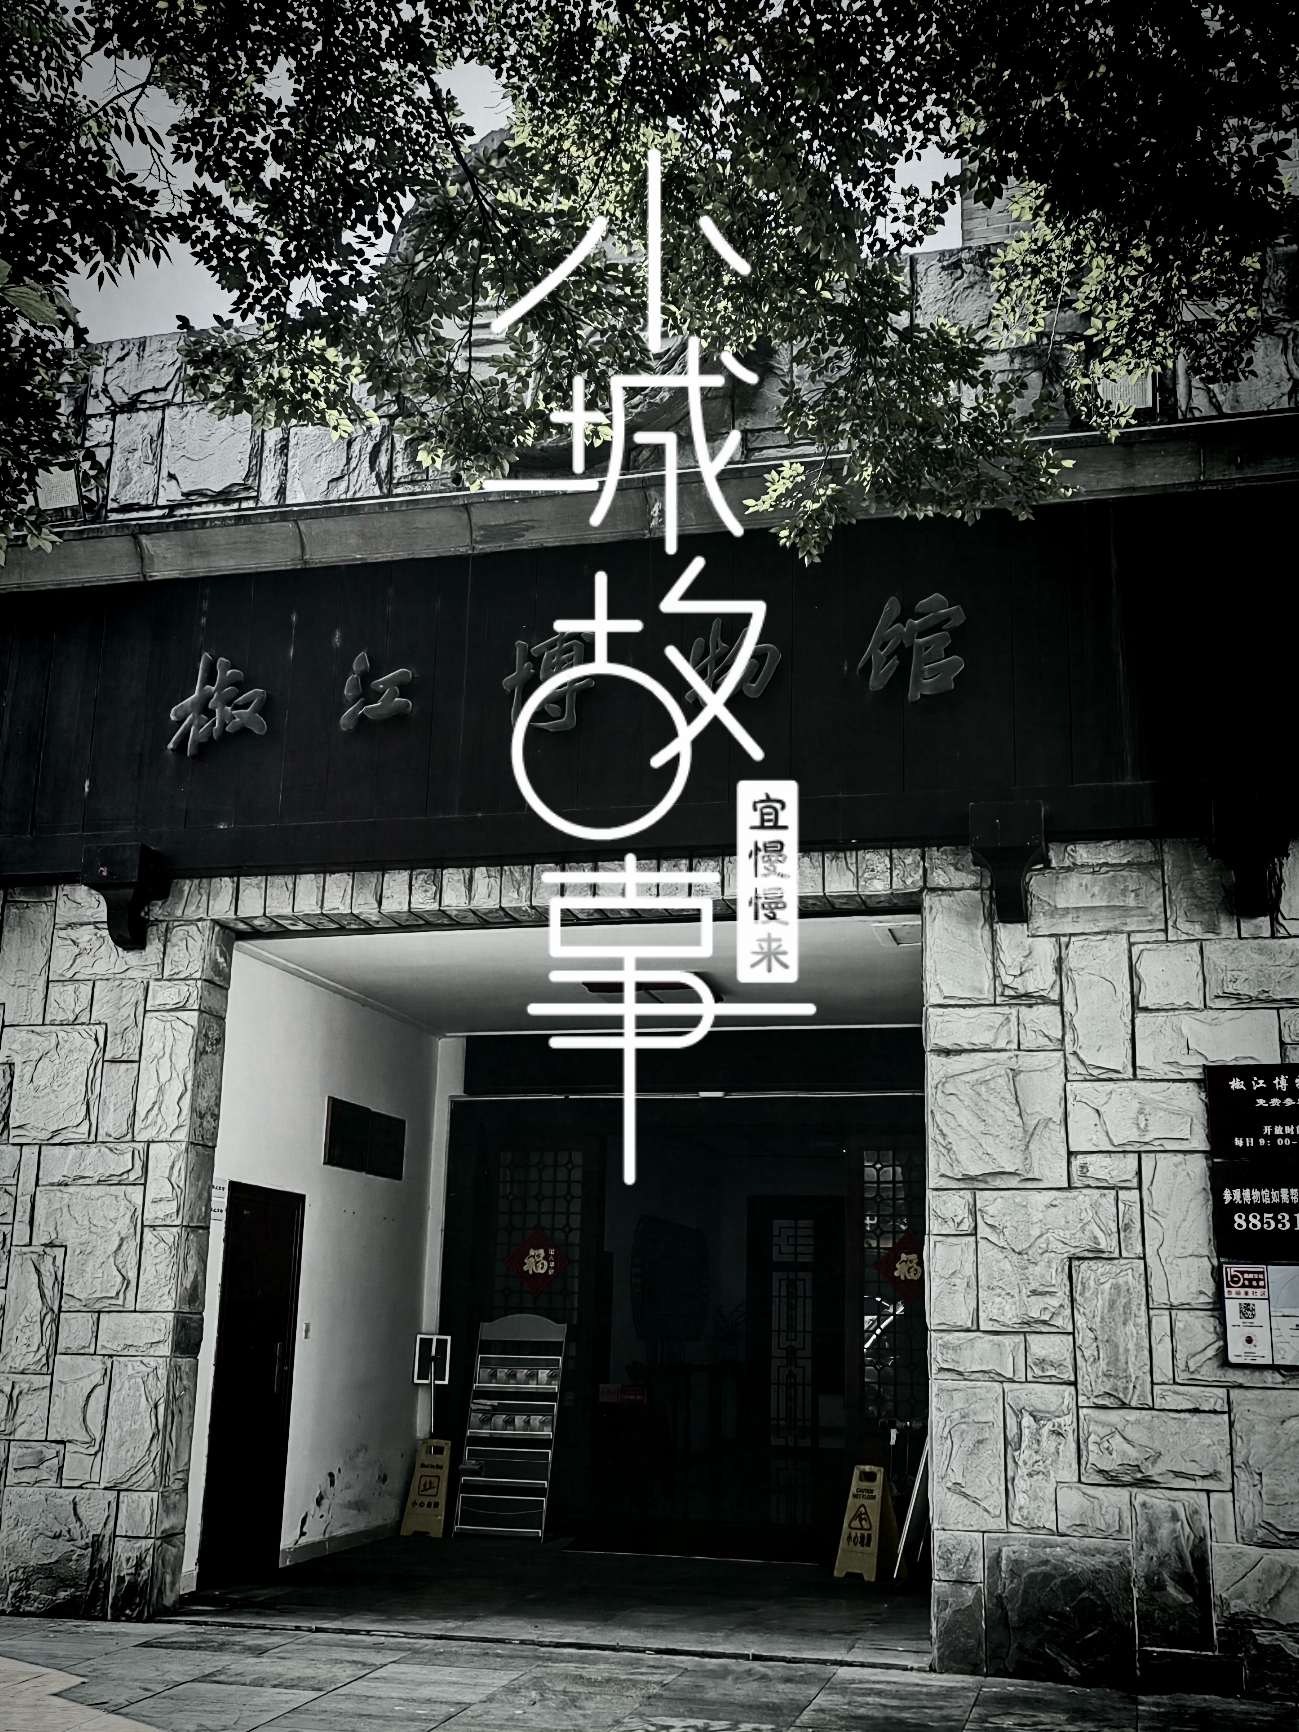 台州市椒江博物馆在一个街角，不起眼的外观诉说着历史的变迁。博物馆于2009年9月29日建成开馆，内设